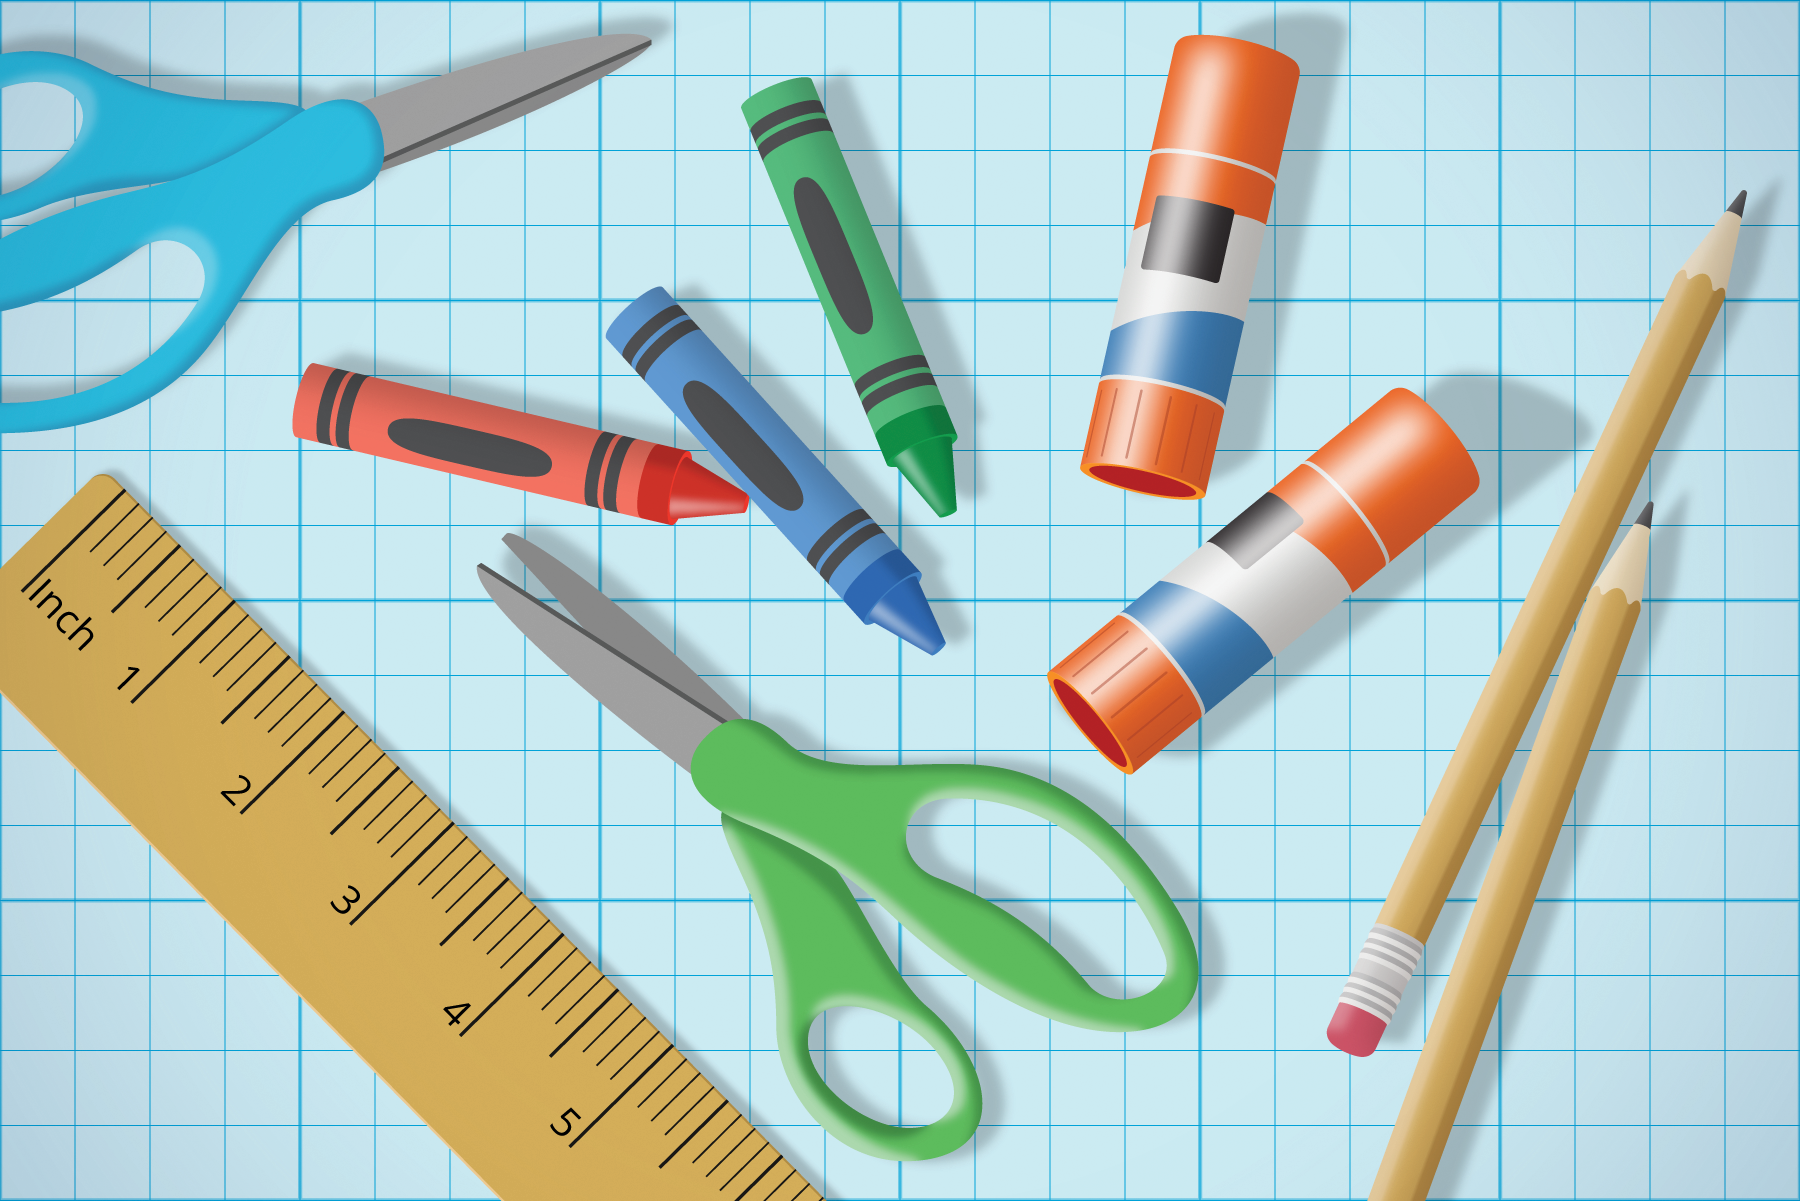 Barras de pegamento, crayones y lápices.